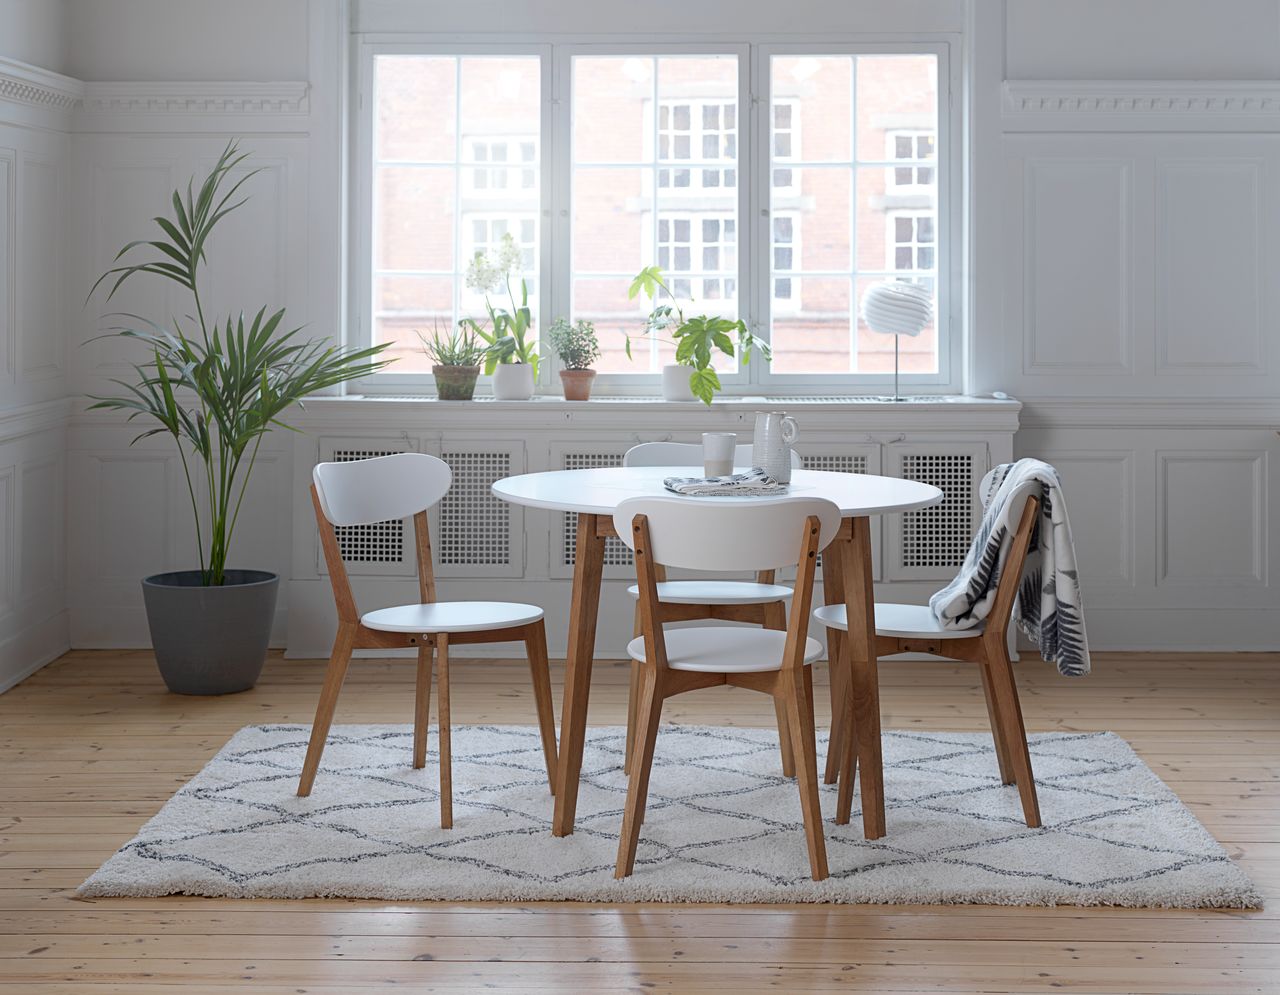 Mẫu phòng ăn hiện đại với màu trắng chủ đạo và nội thất gỗ tự nhiên phong cách Scandinavian